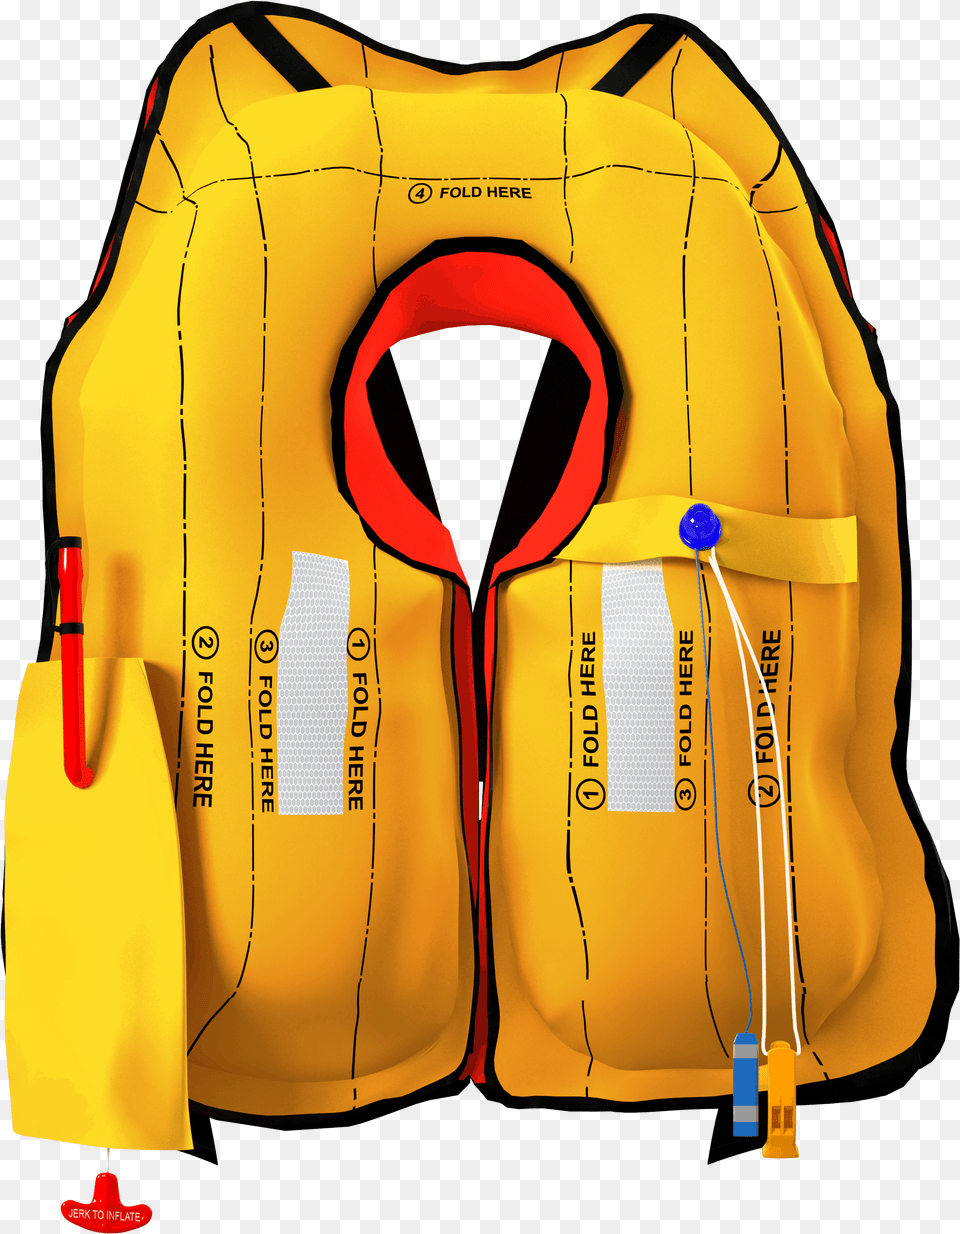 Lifejacket, Clothing, Vest Png Image